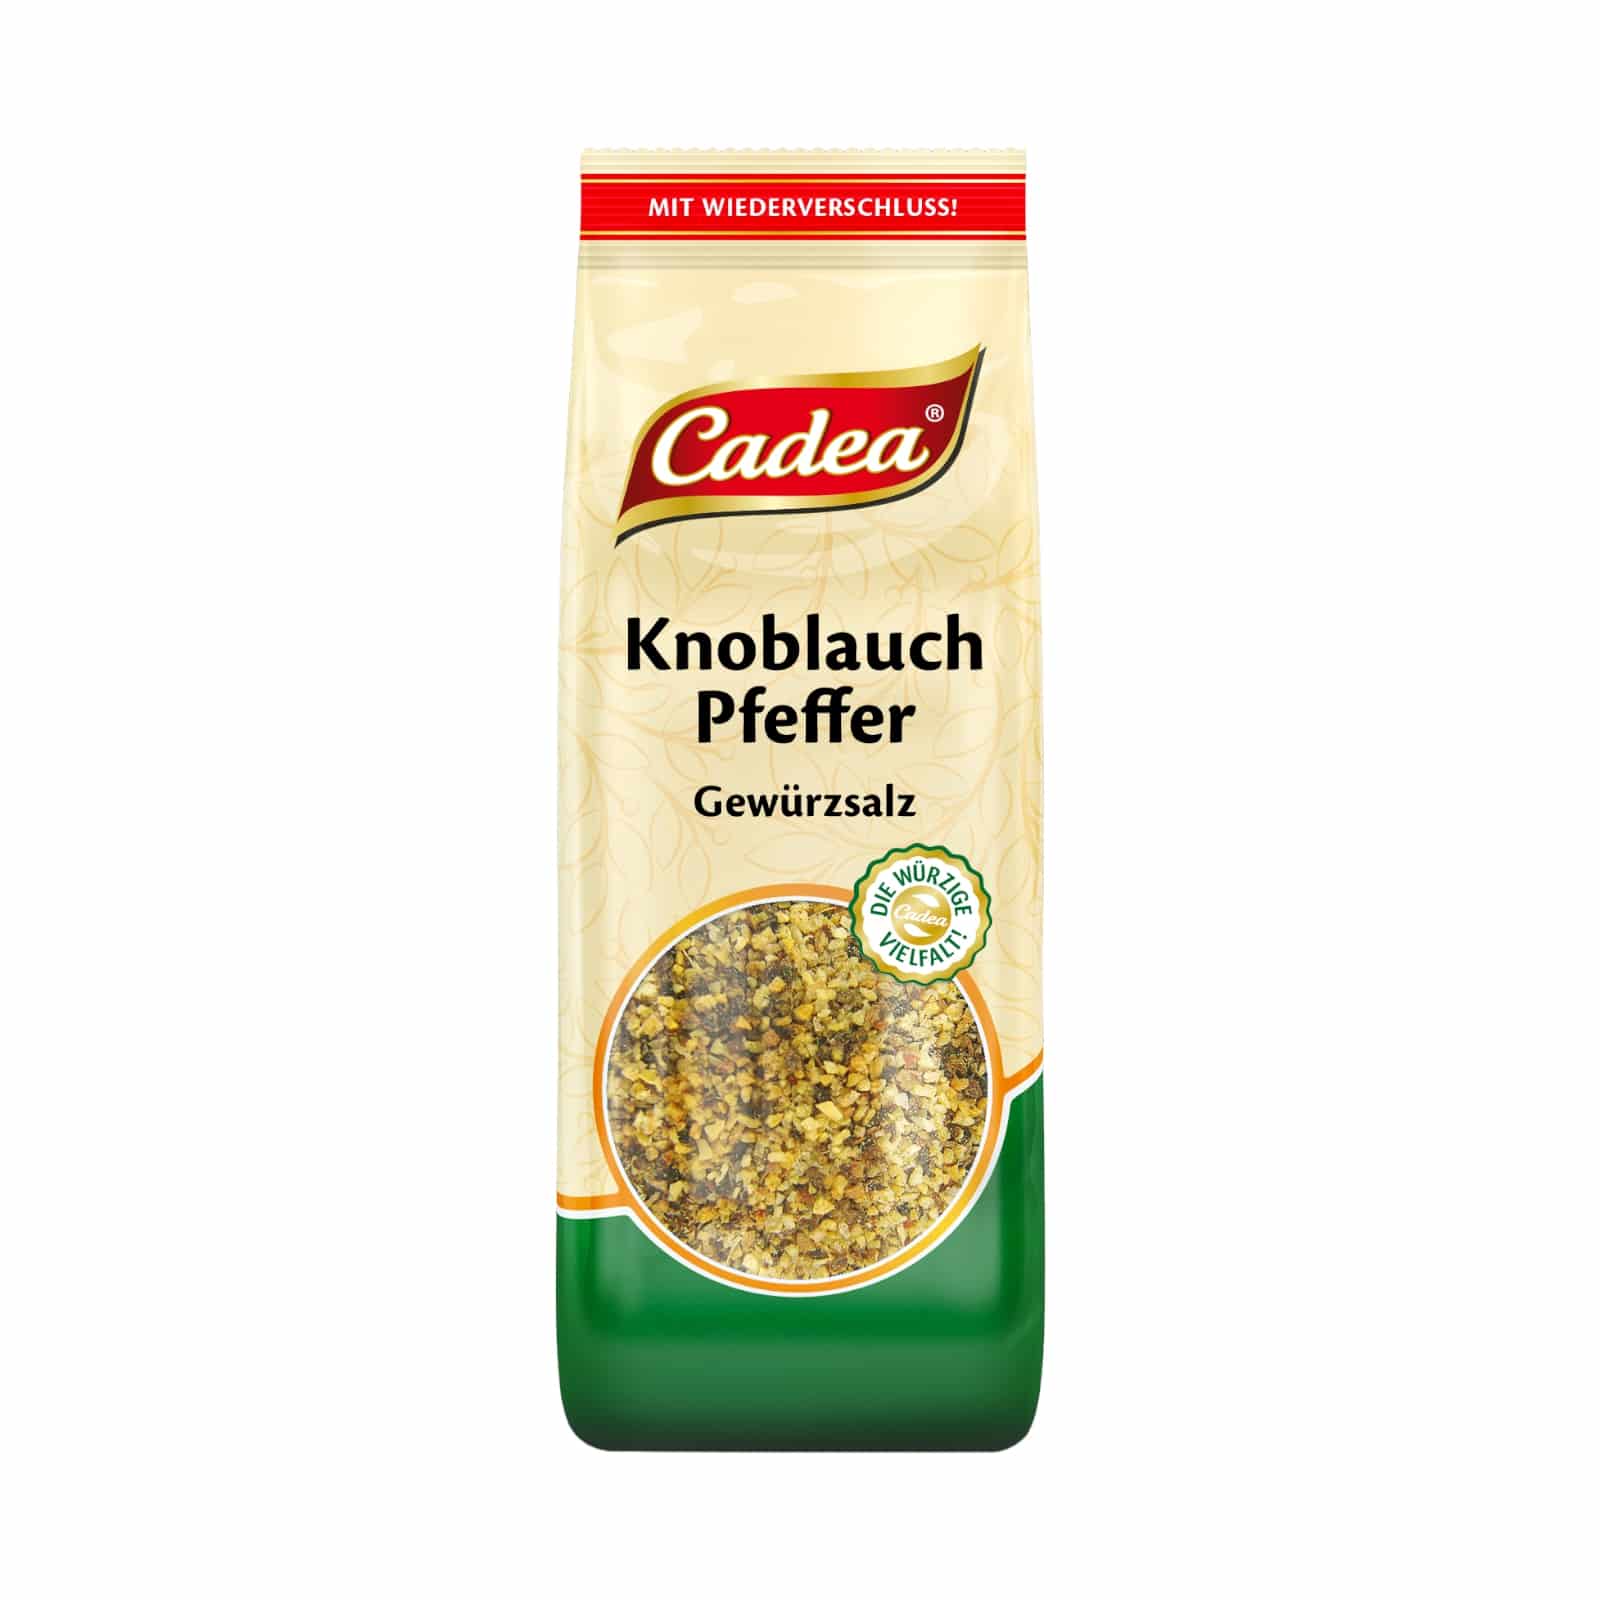 CADEA Knoblauch-Pfeffer GS 70g BT